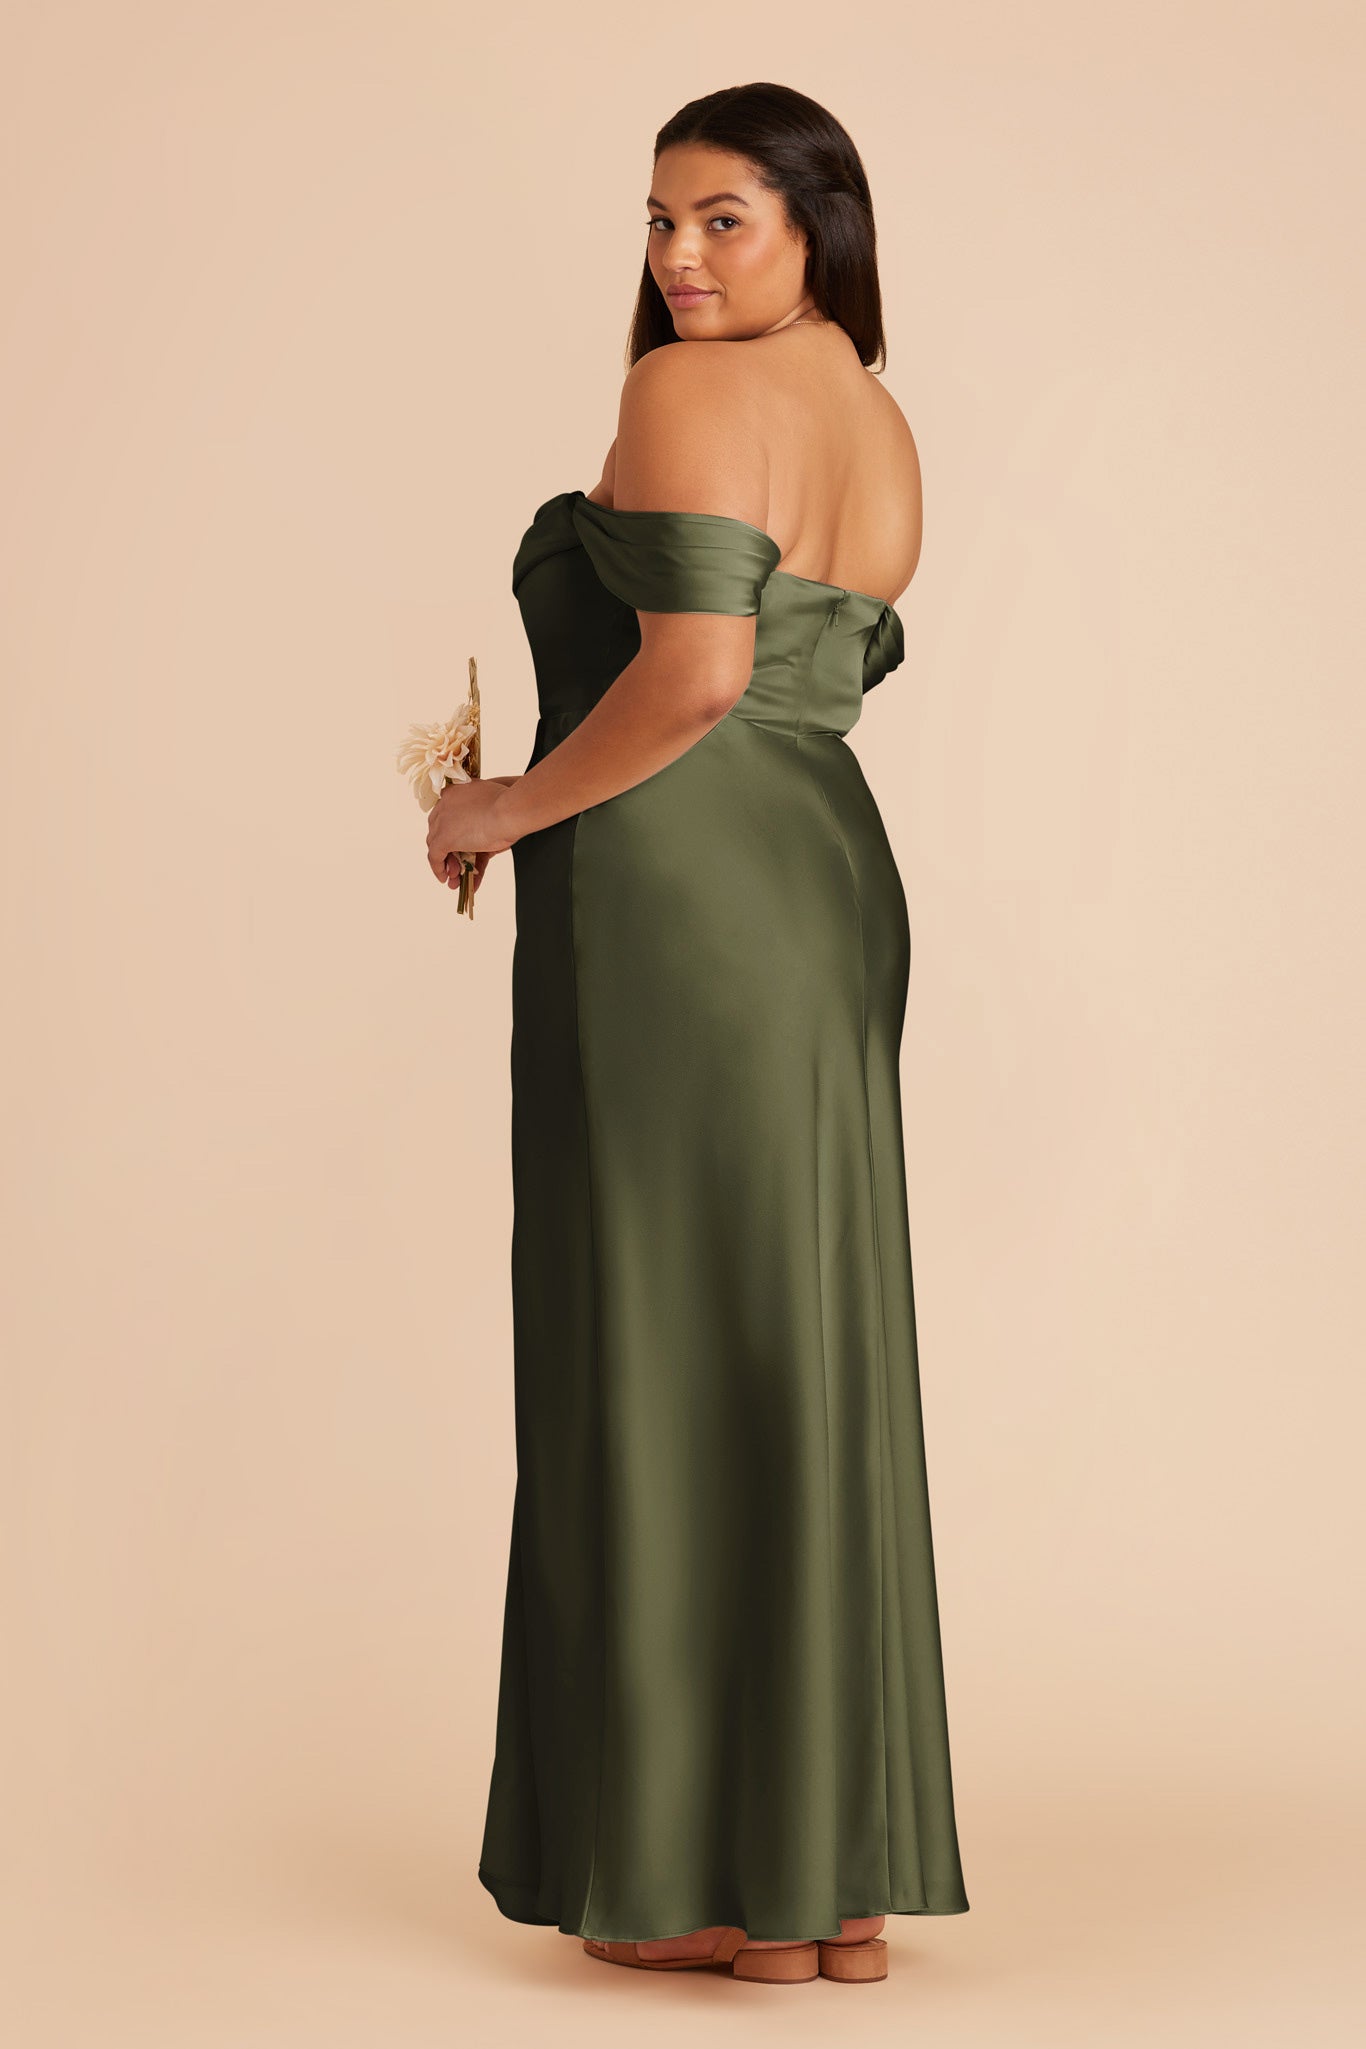 Olive Mia Matte Satin Dress by Birdy Grey